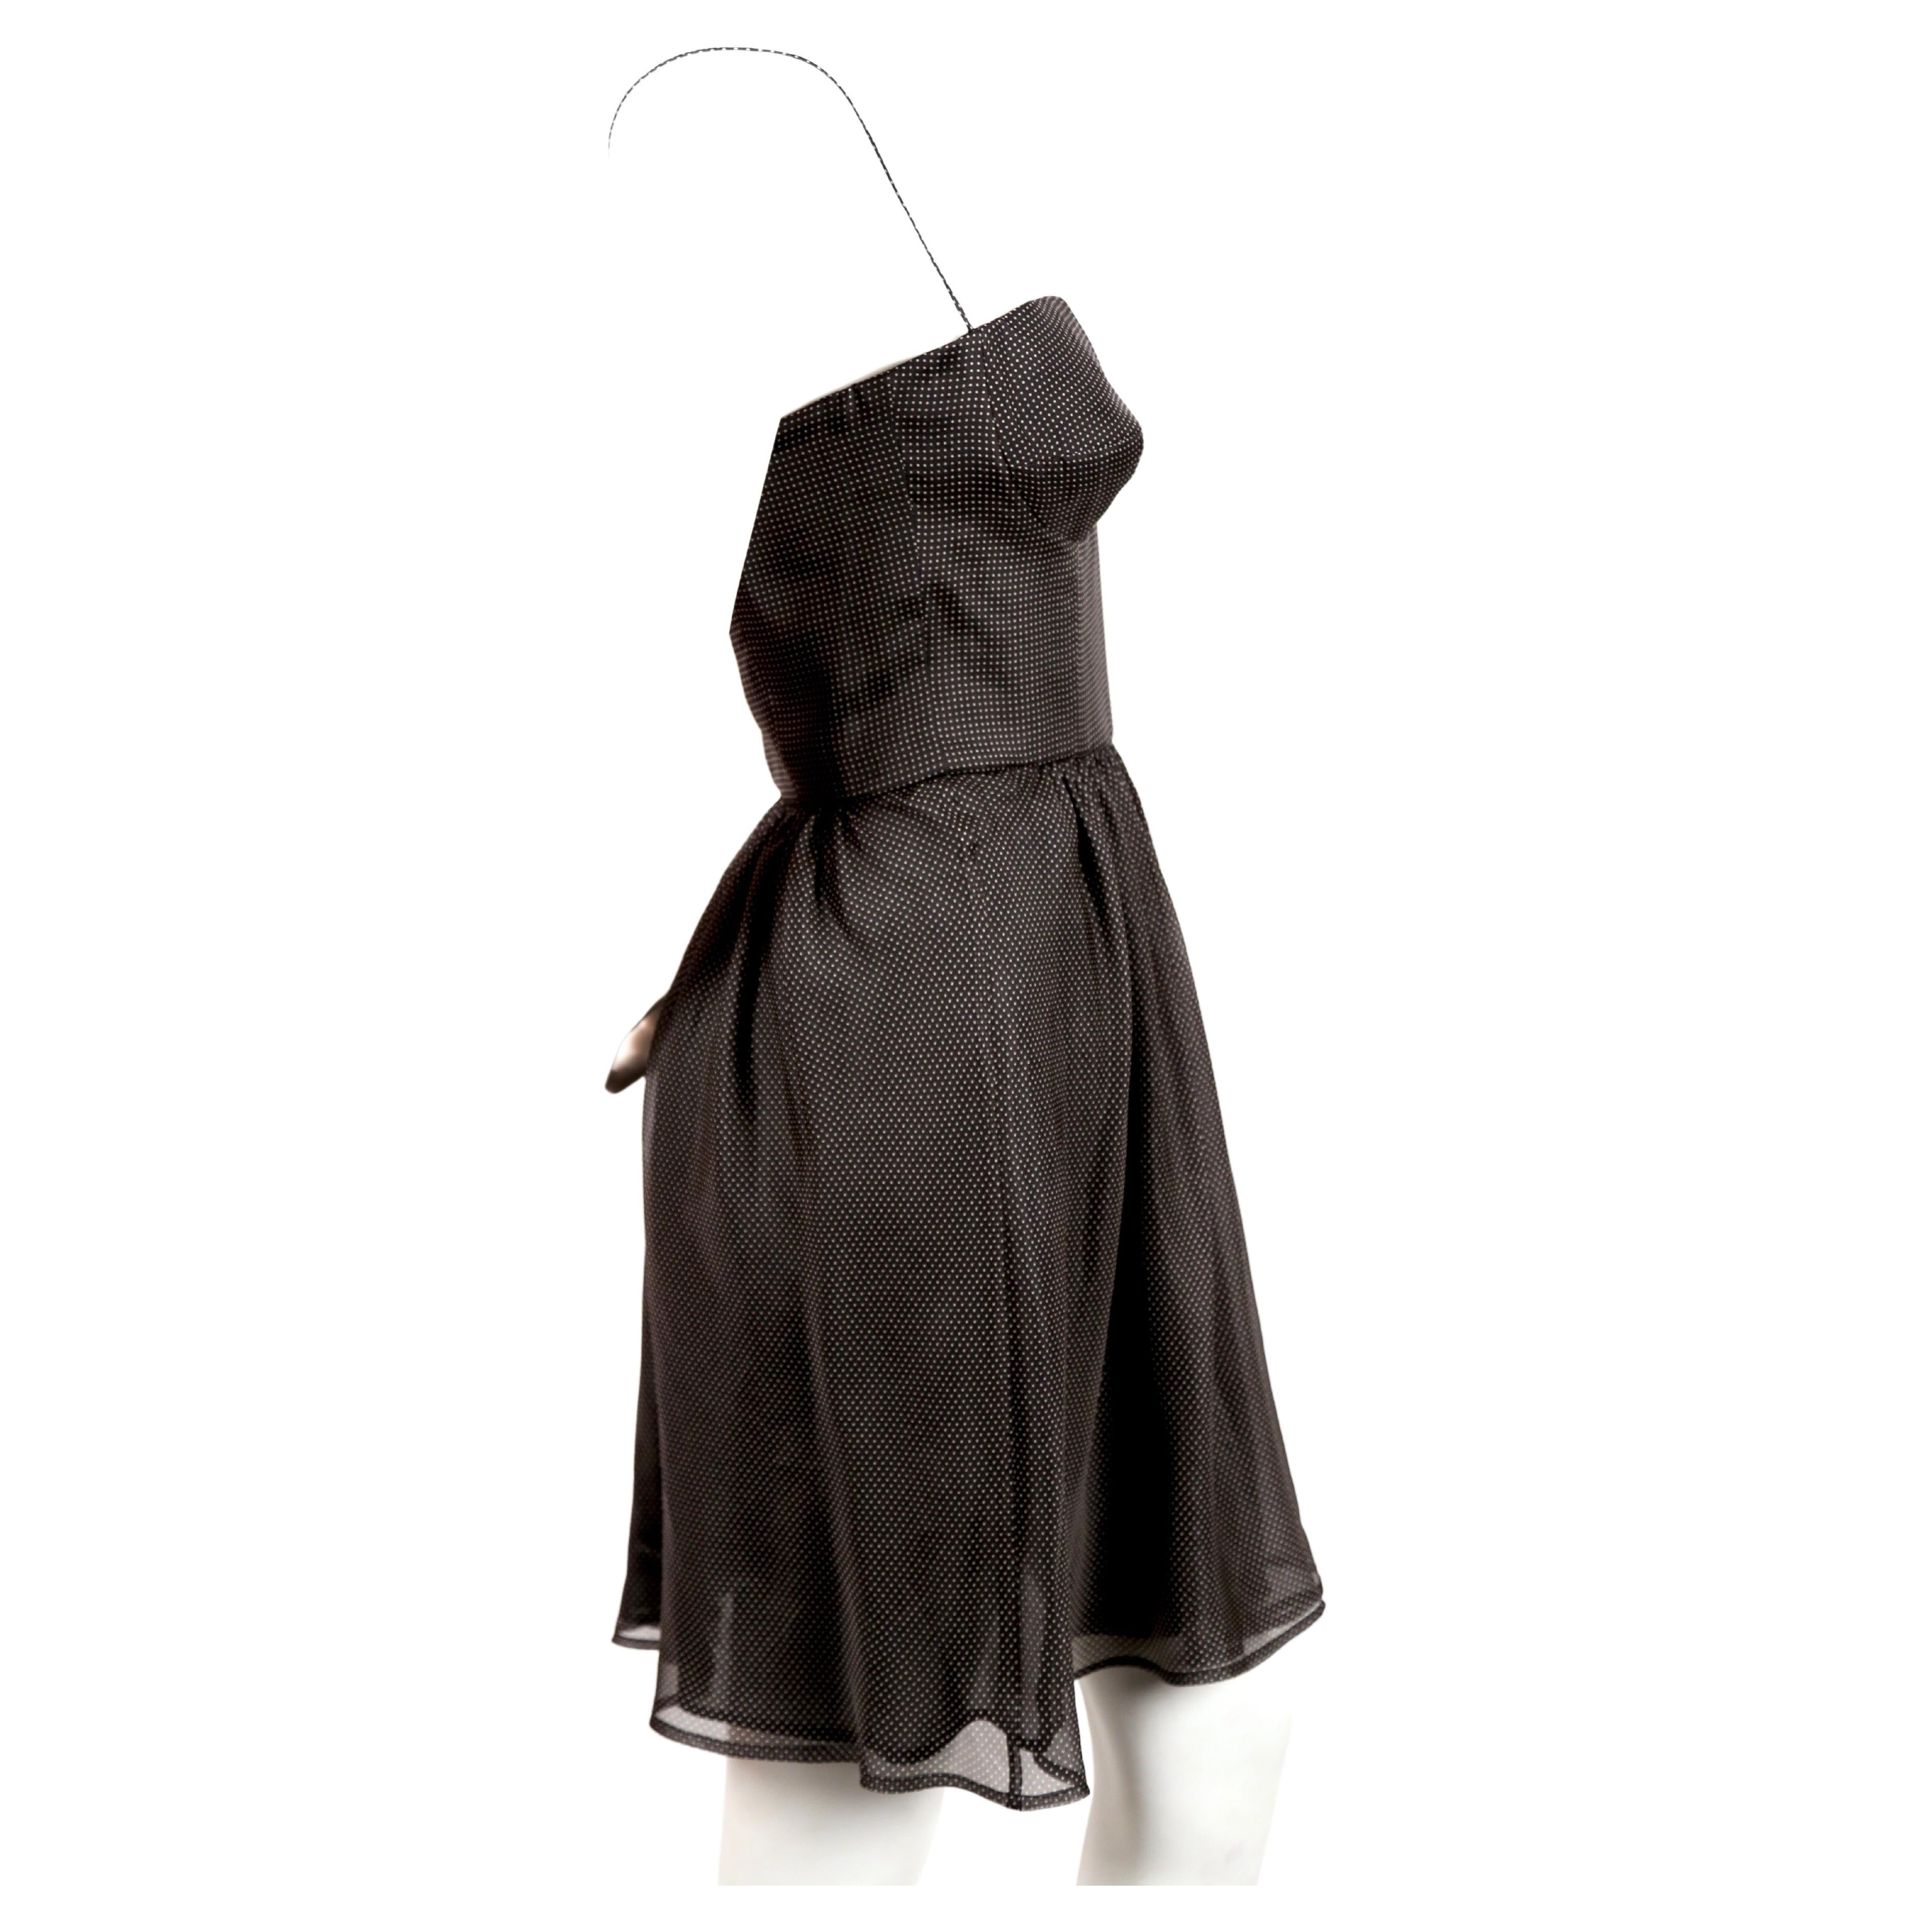 Robe bustier en soie noire à pois blanc cassé, conçue par Giorgio Armani, datant de la fin des années 1980, début des années 1990. Taille italienne 38. Convient parfaitement à une poitrine de 32-33